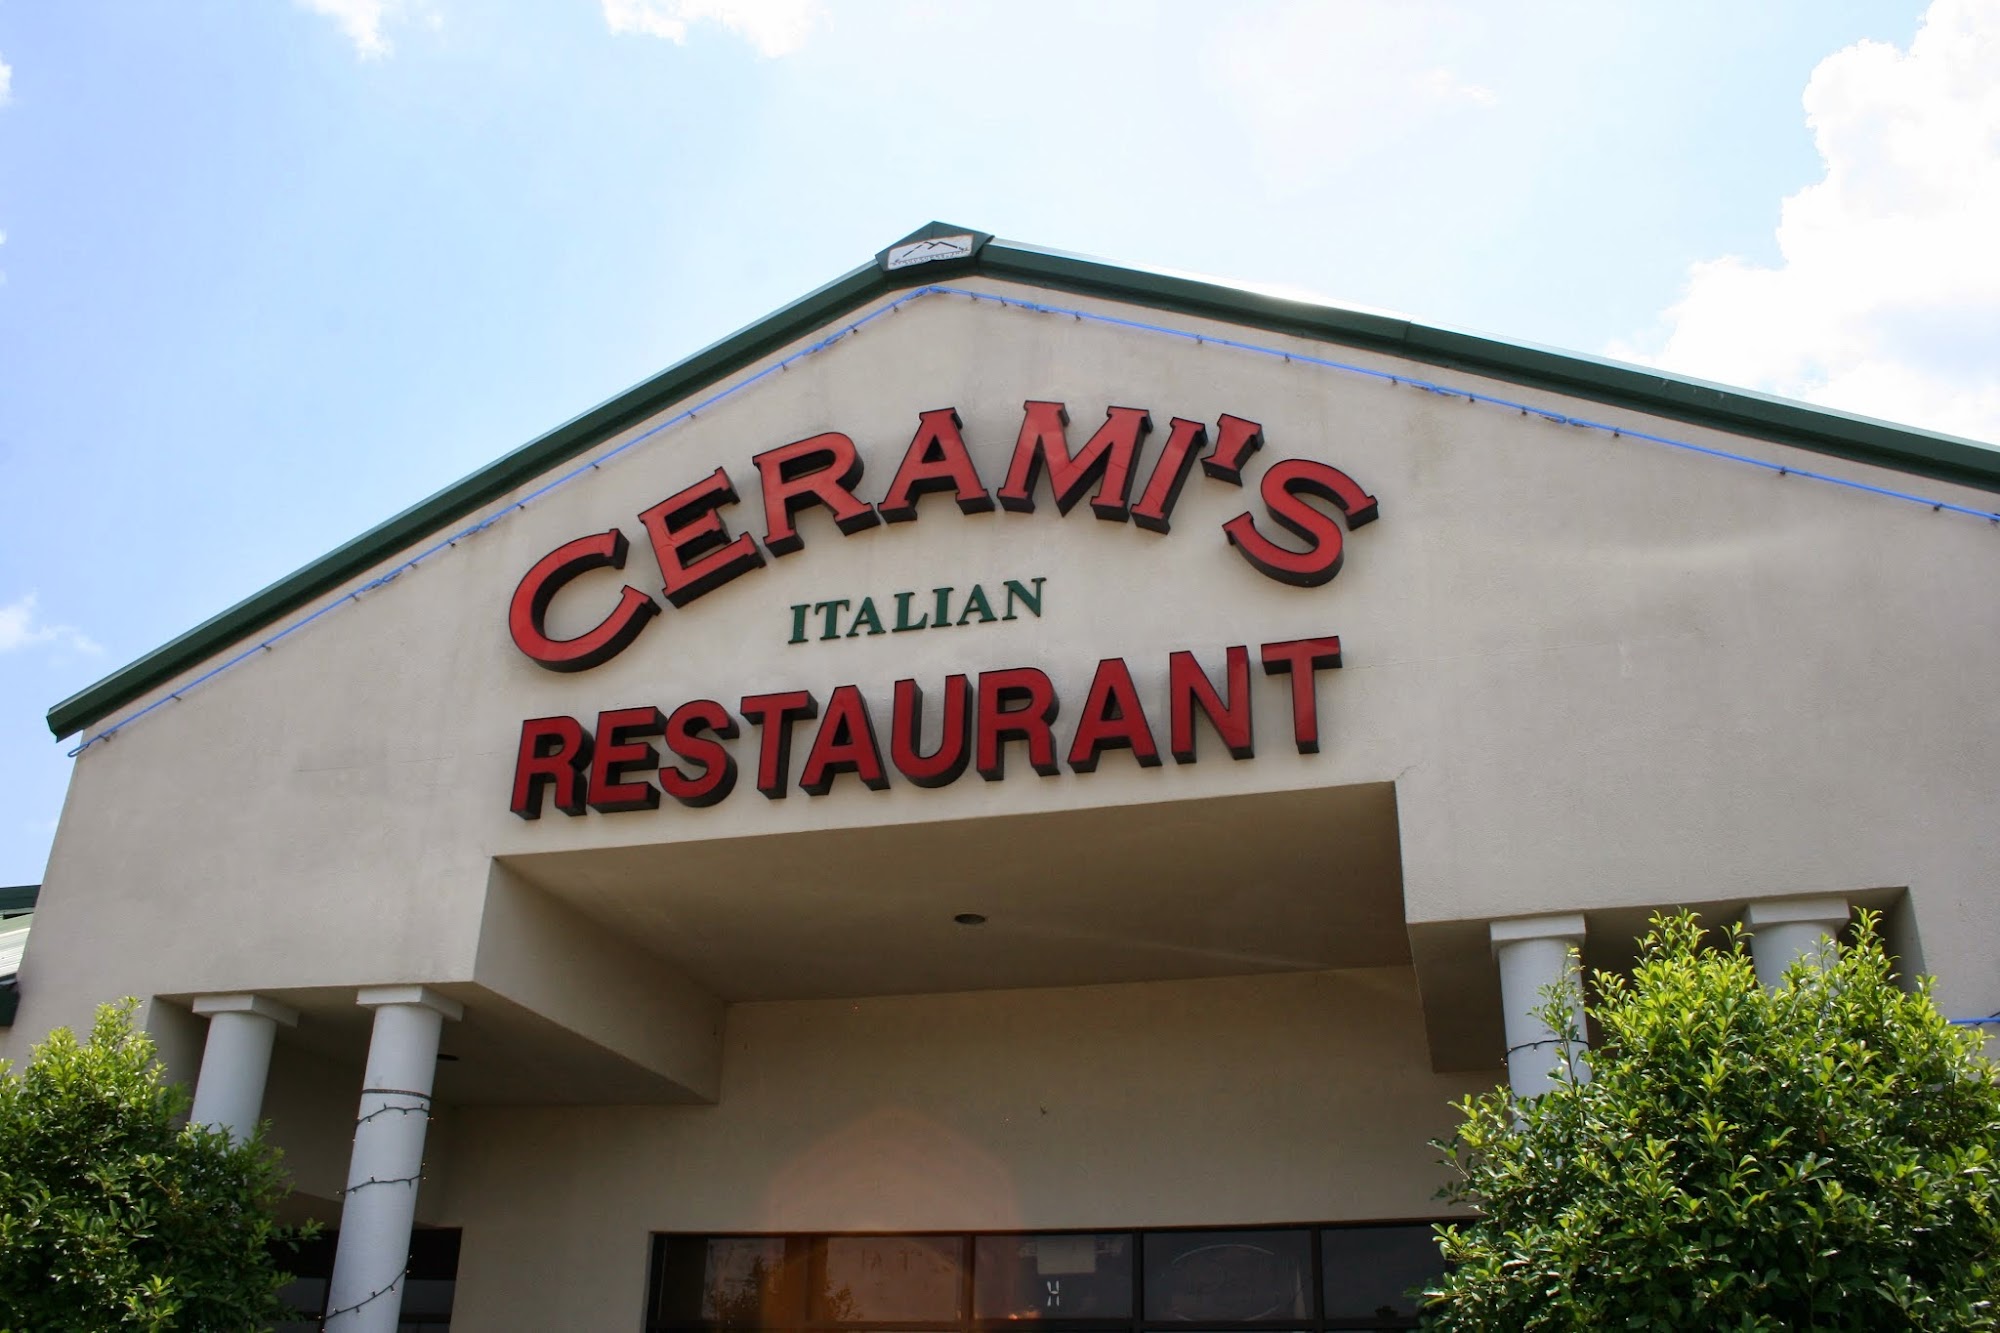 Cerami's Italian Restaurant